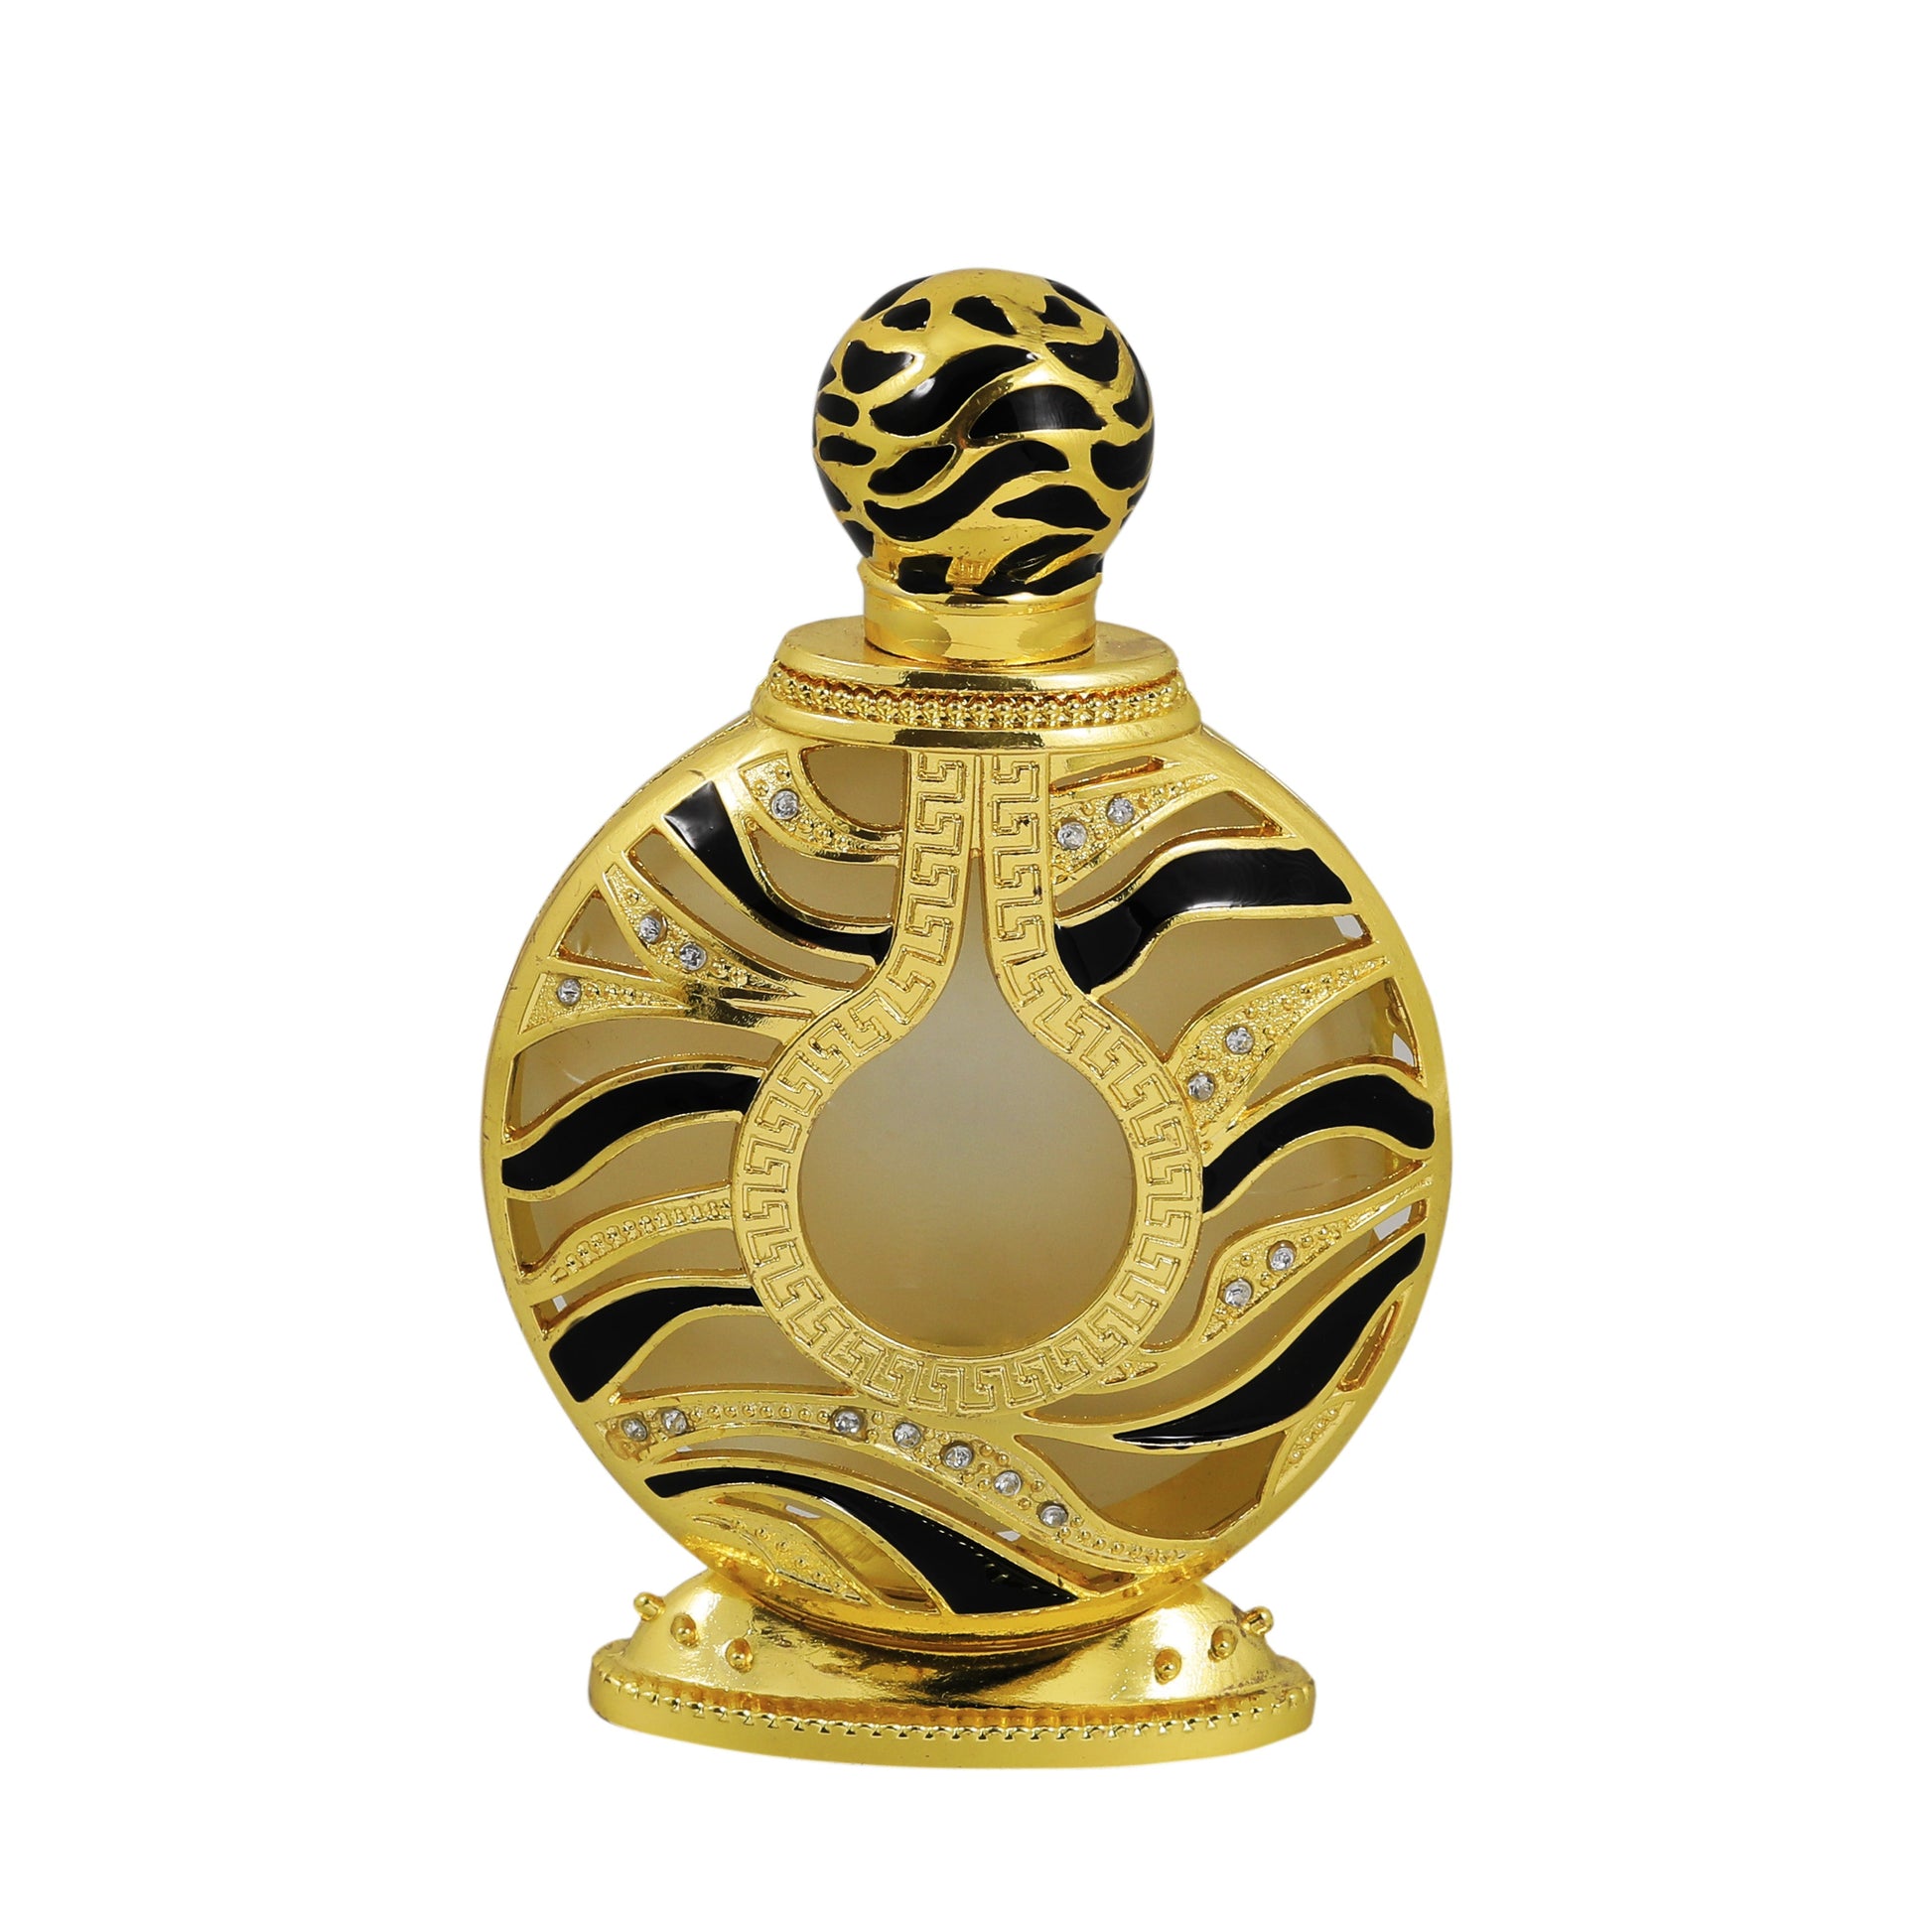  SAFARI GOLD - 35ml Perfume oil 